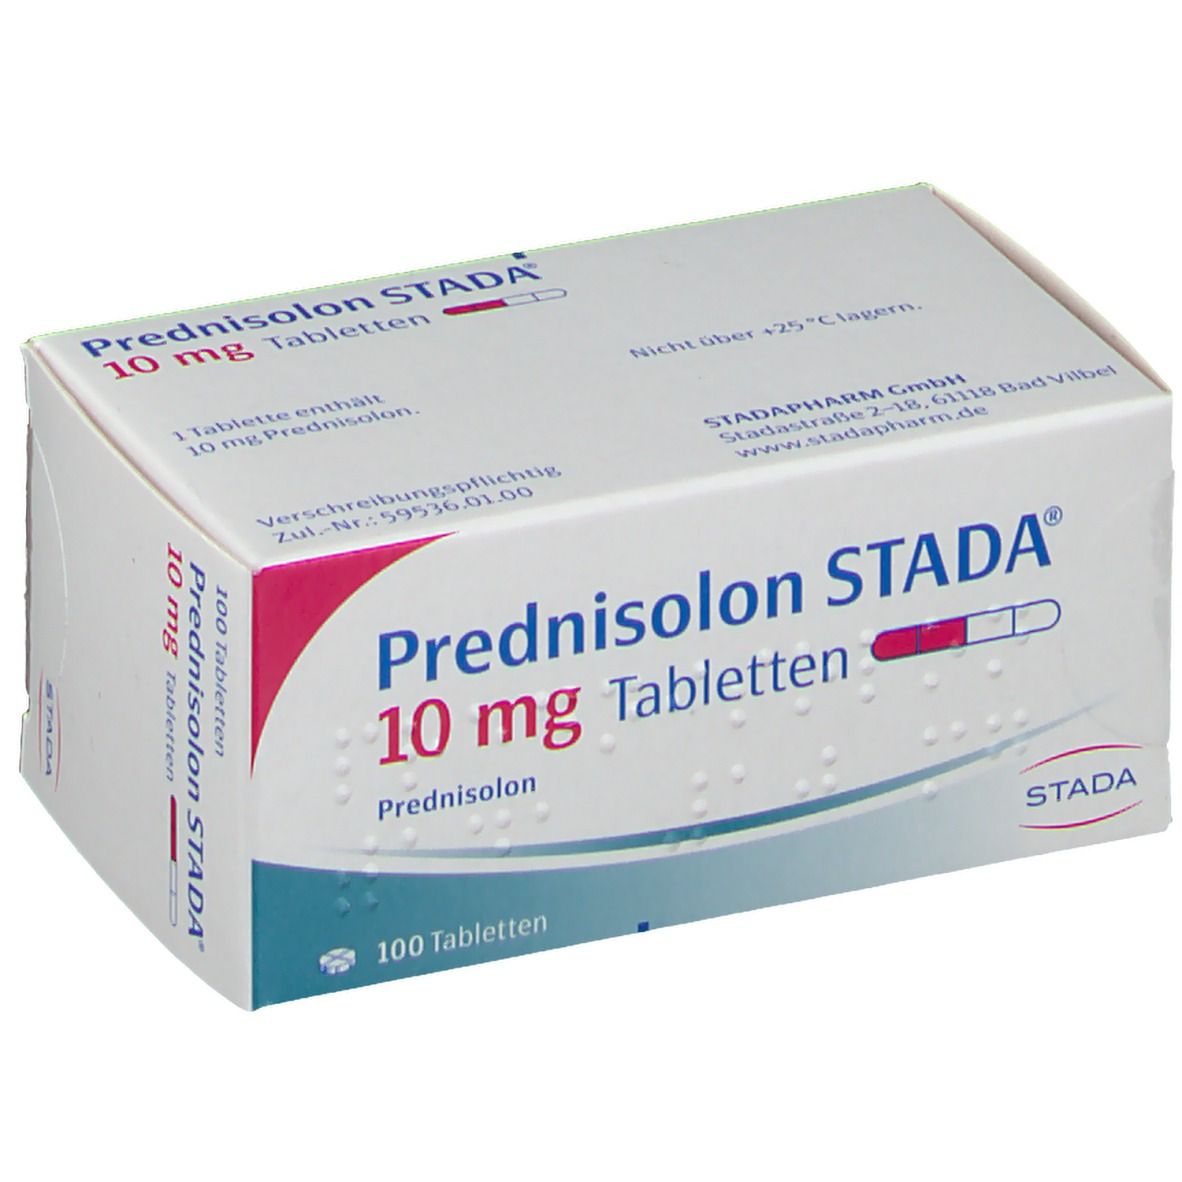 Prednisolon STADA® 10 mg